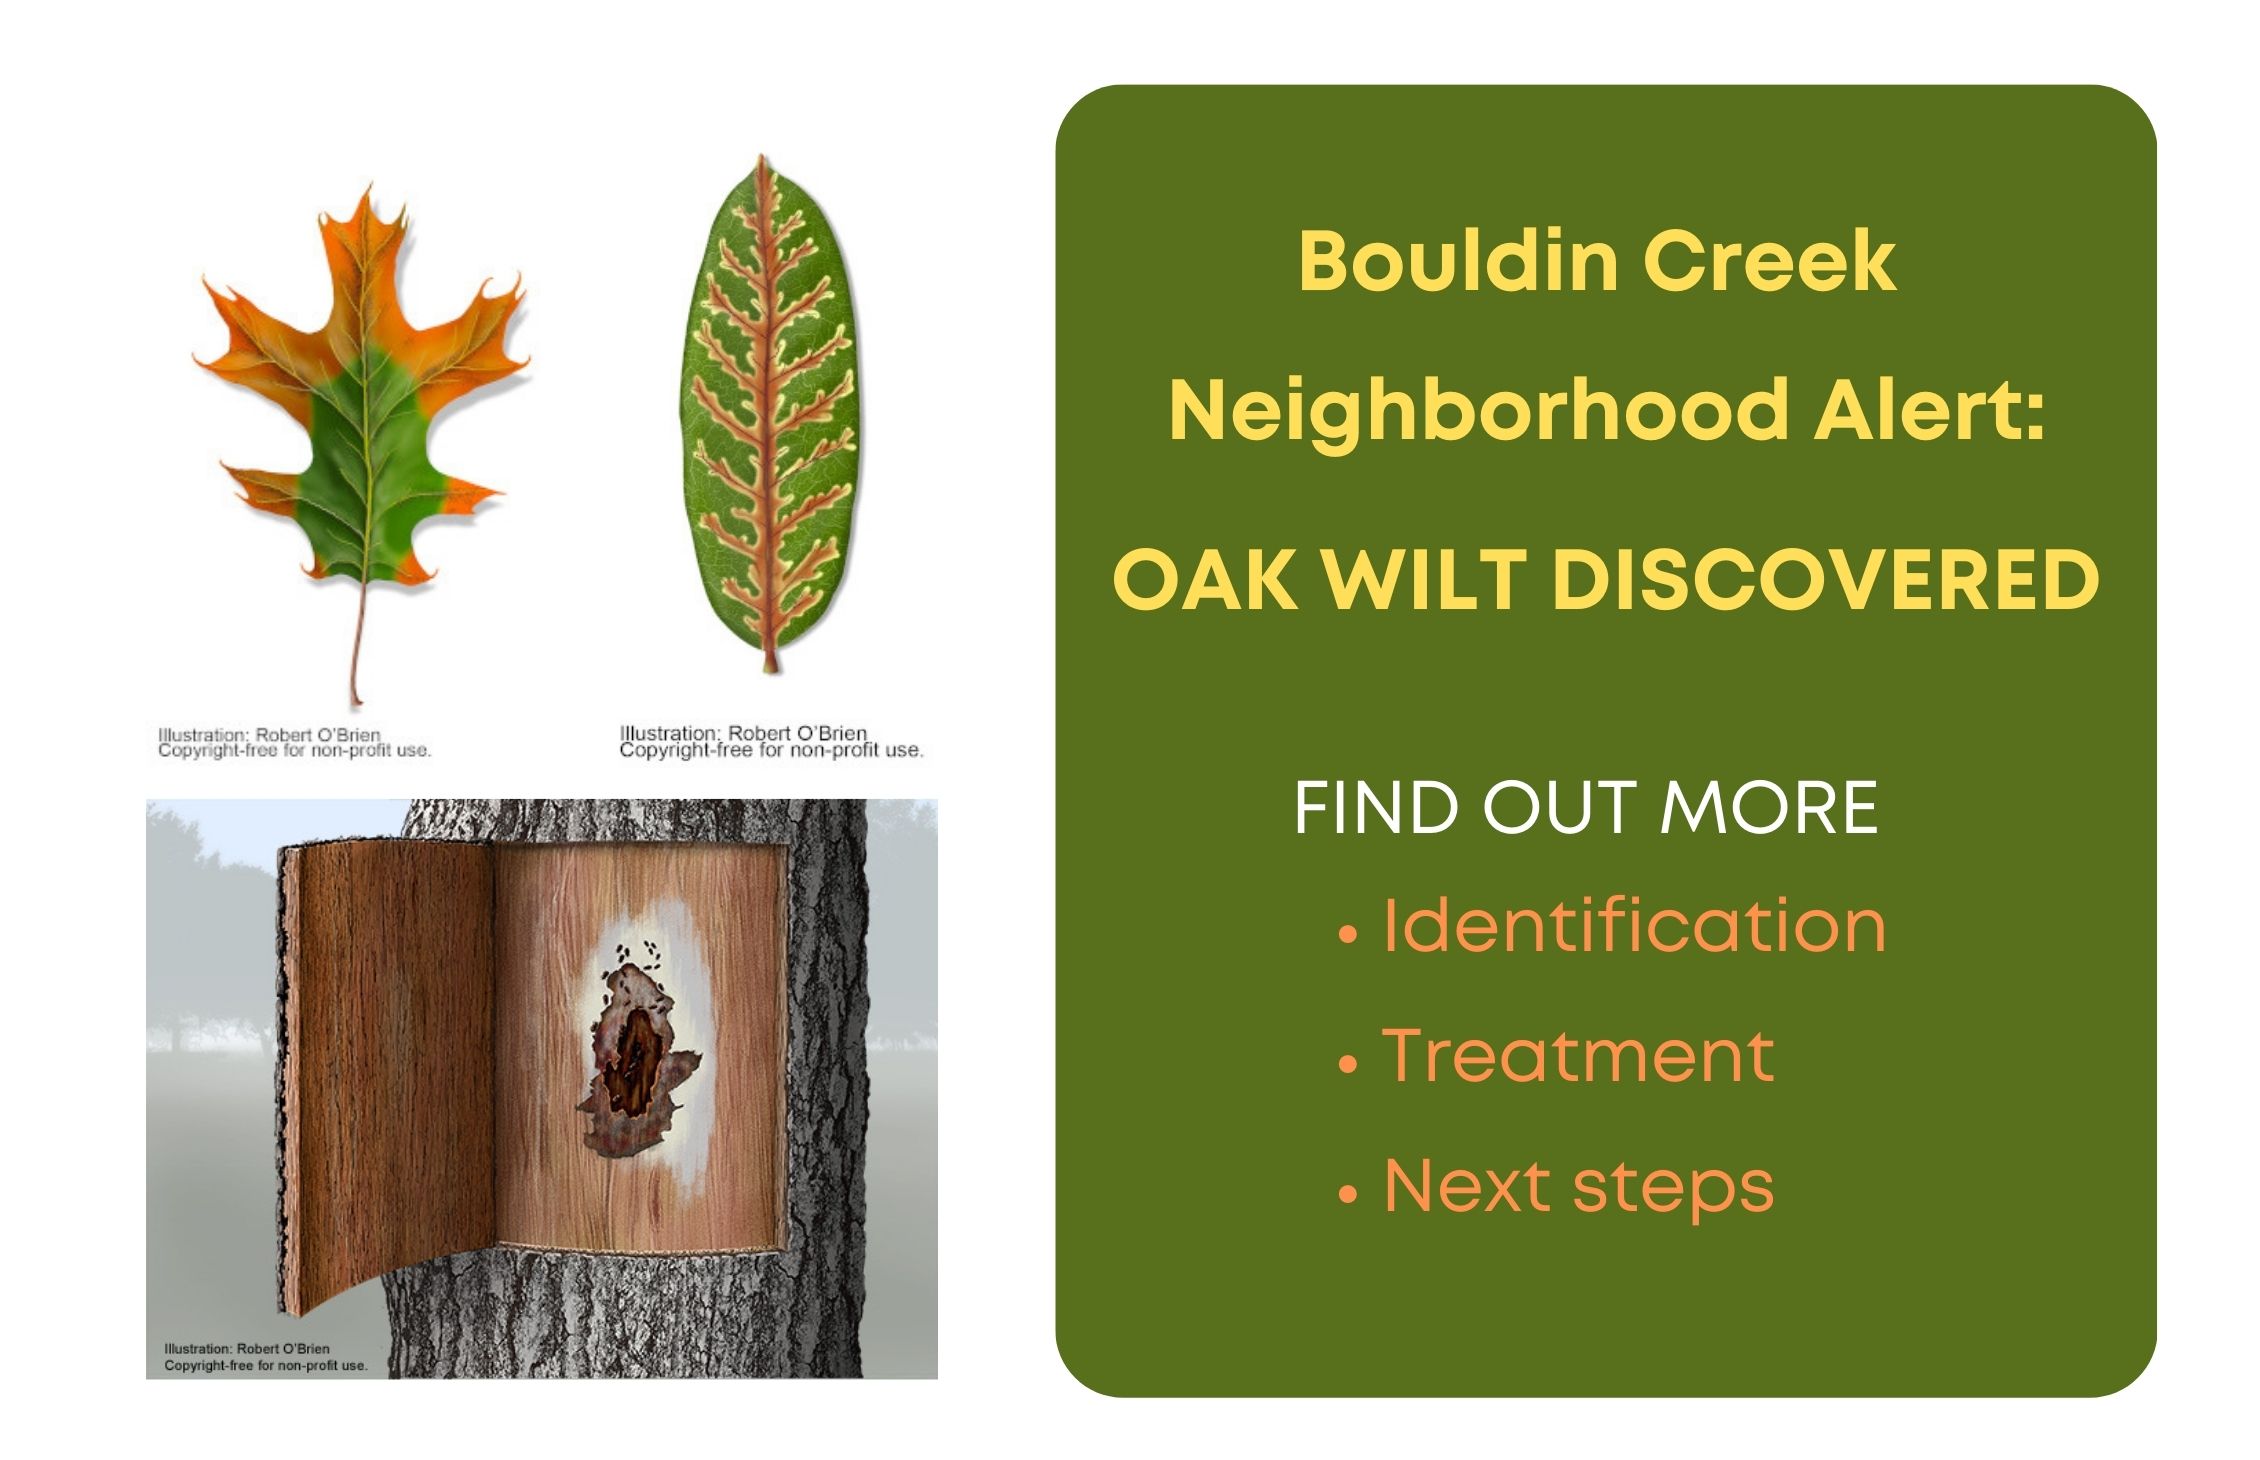 Oak Wilt discovered in Bouldin Creek